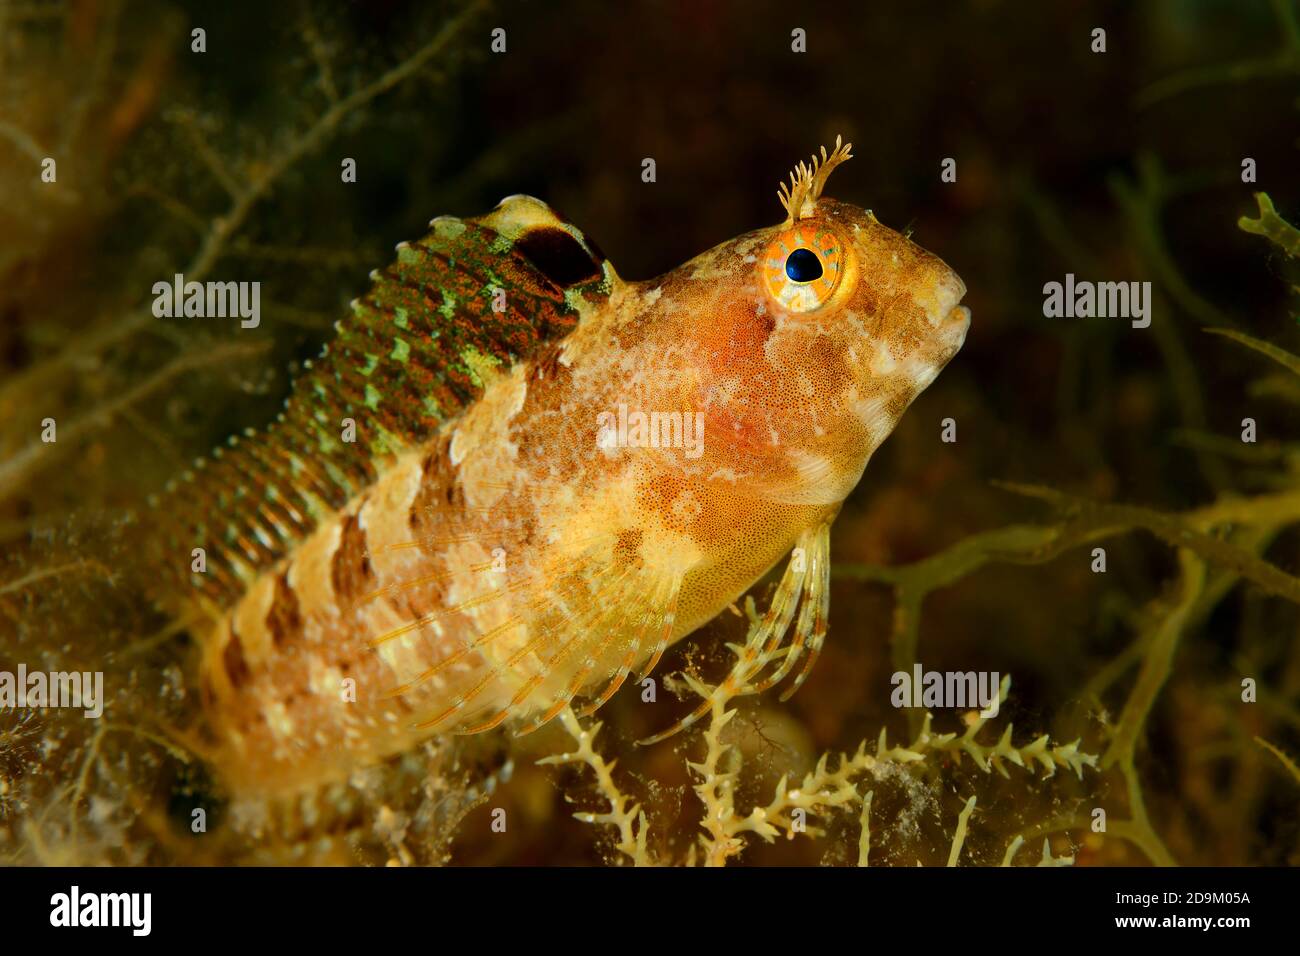 Horned slimy fish, Parablennius tentacularis, Tamariu, Costa Brava, Spain, Mediterranean Stock Photo